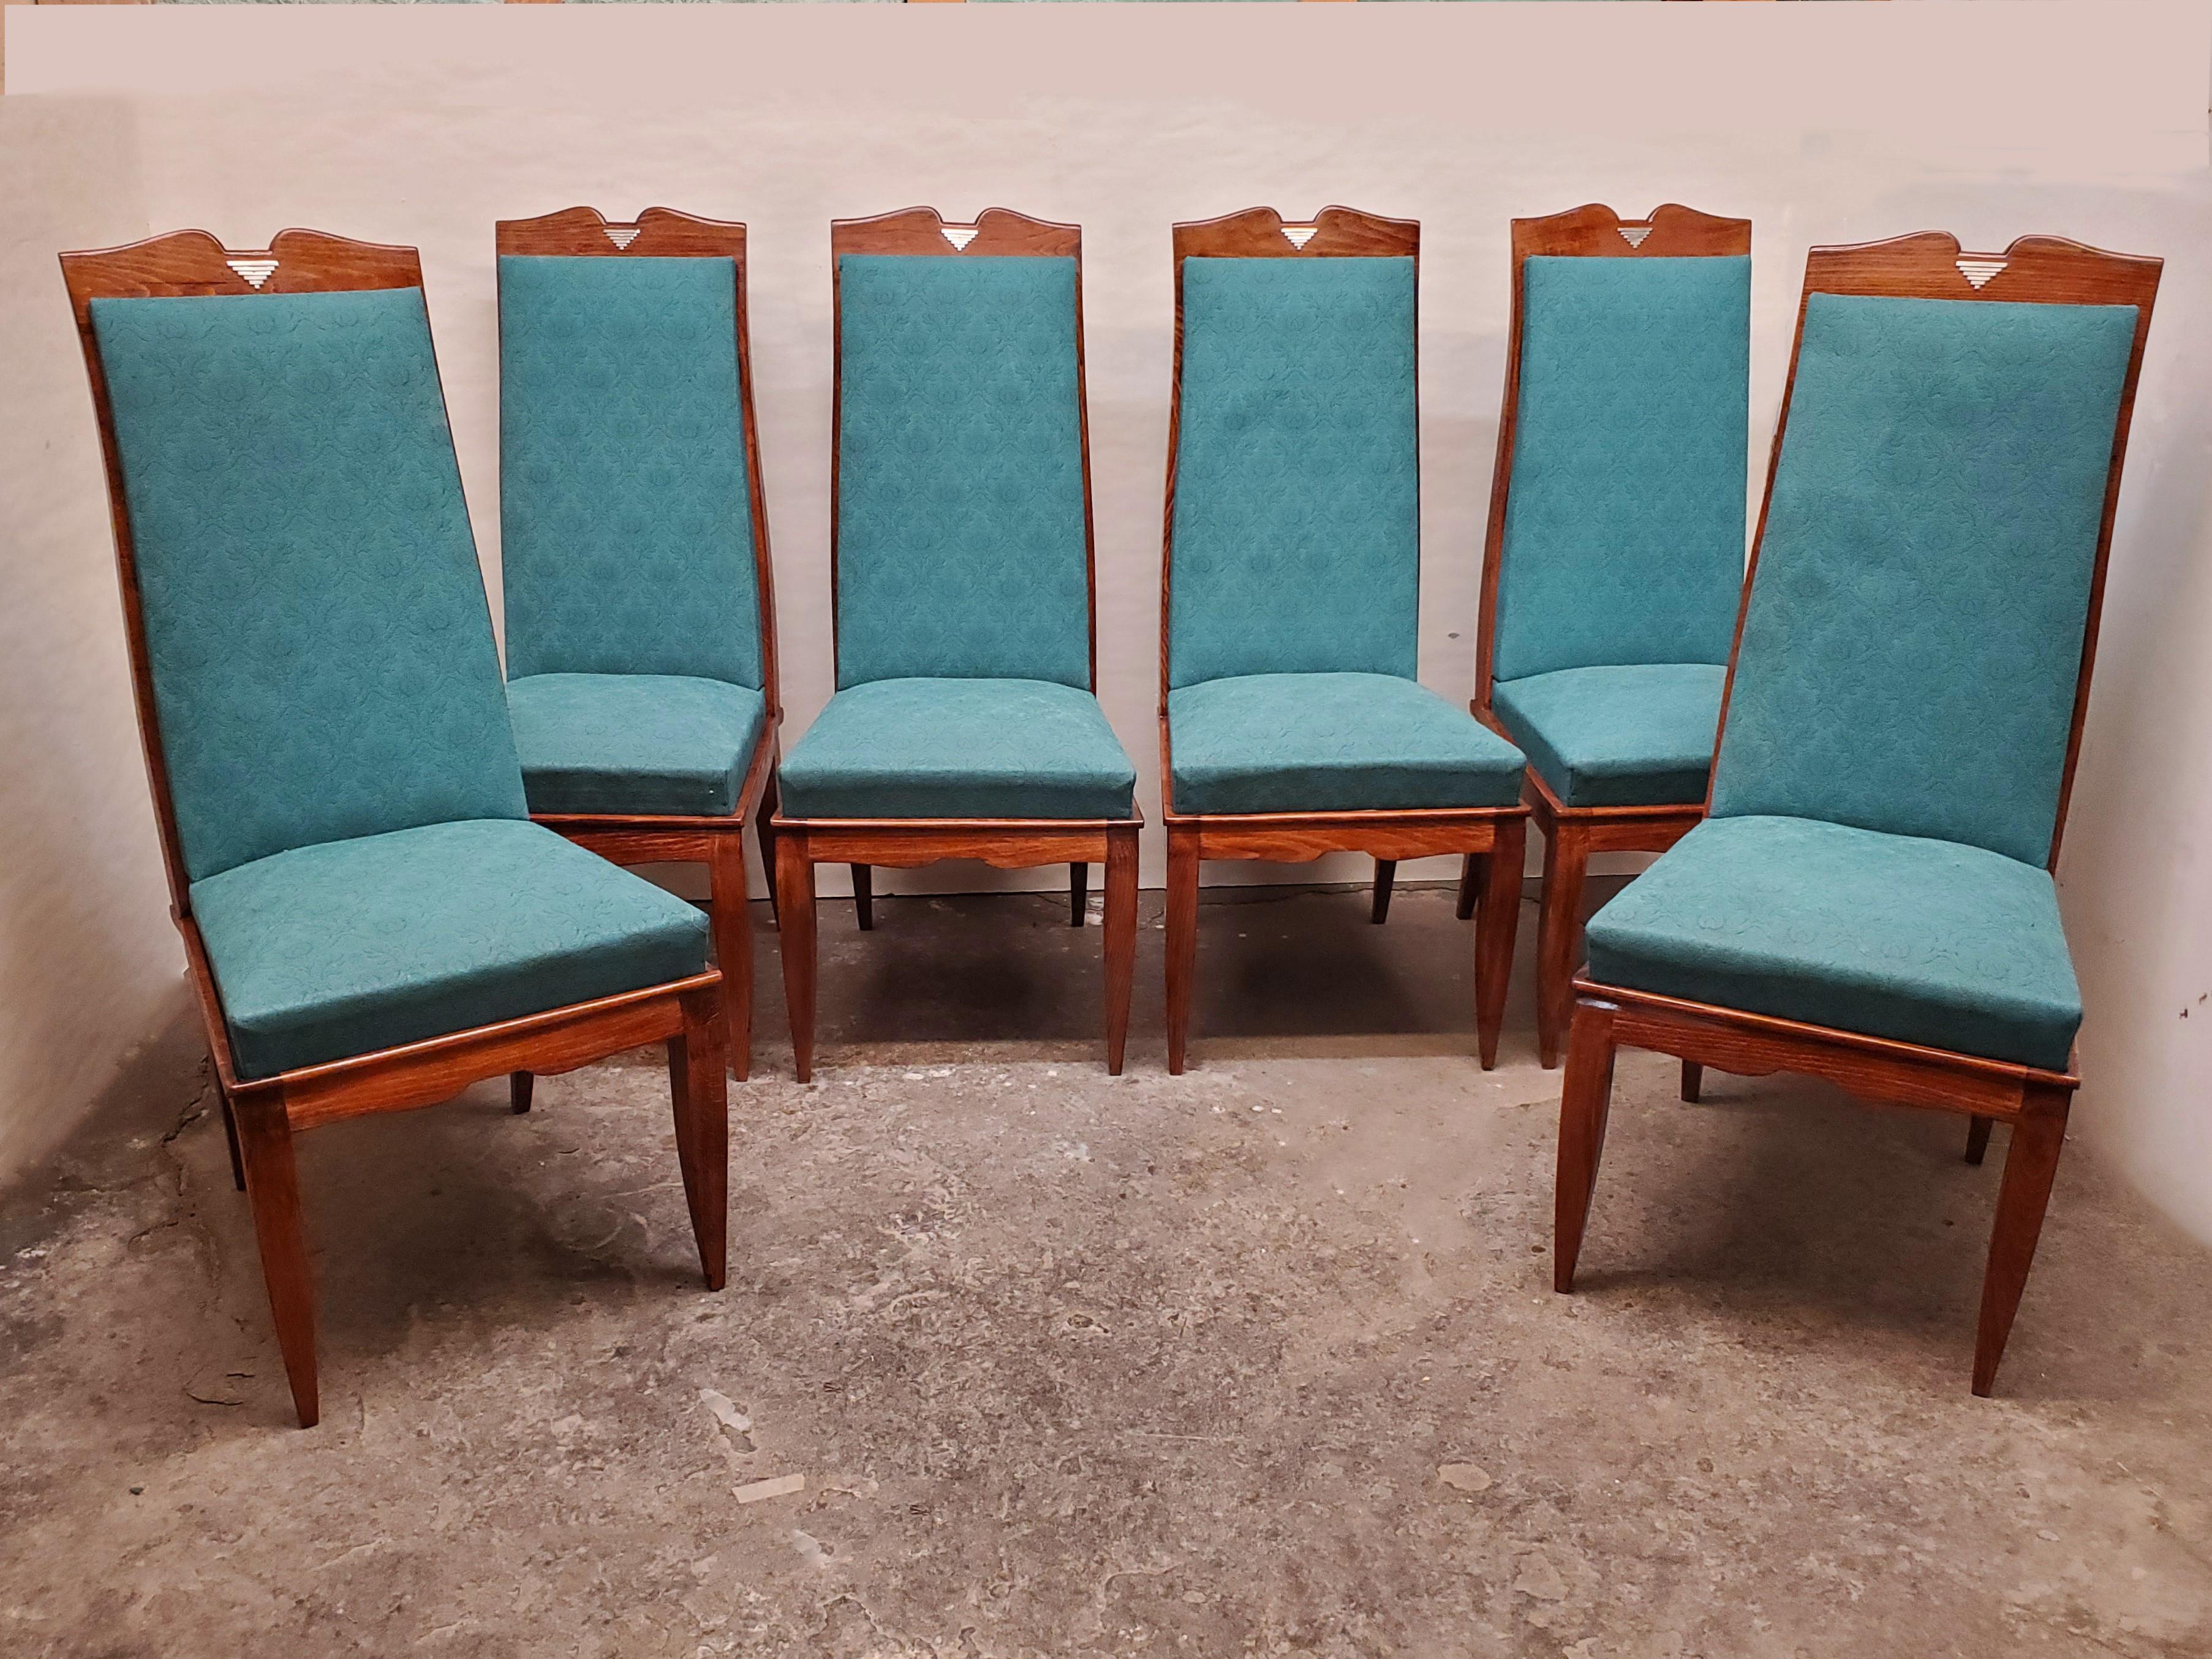 Un ensemble de six chaises de salle à manger hautes et modernes du milieu du siècle, aux lignes angulaires, avec un plateau incurvé en forme de moustache, d'élégants pieds cabriole effilés à l'avant et des pieds arrière évasés.
Les chaises ont une